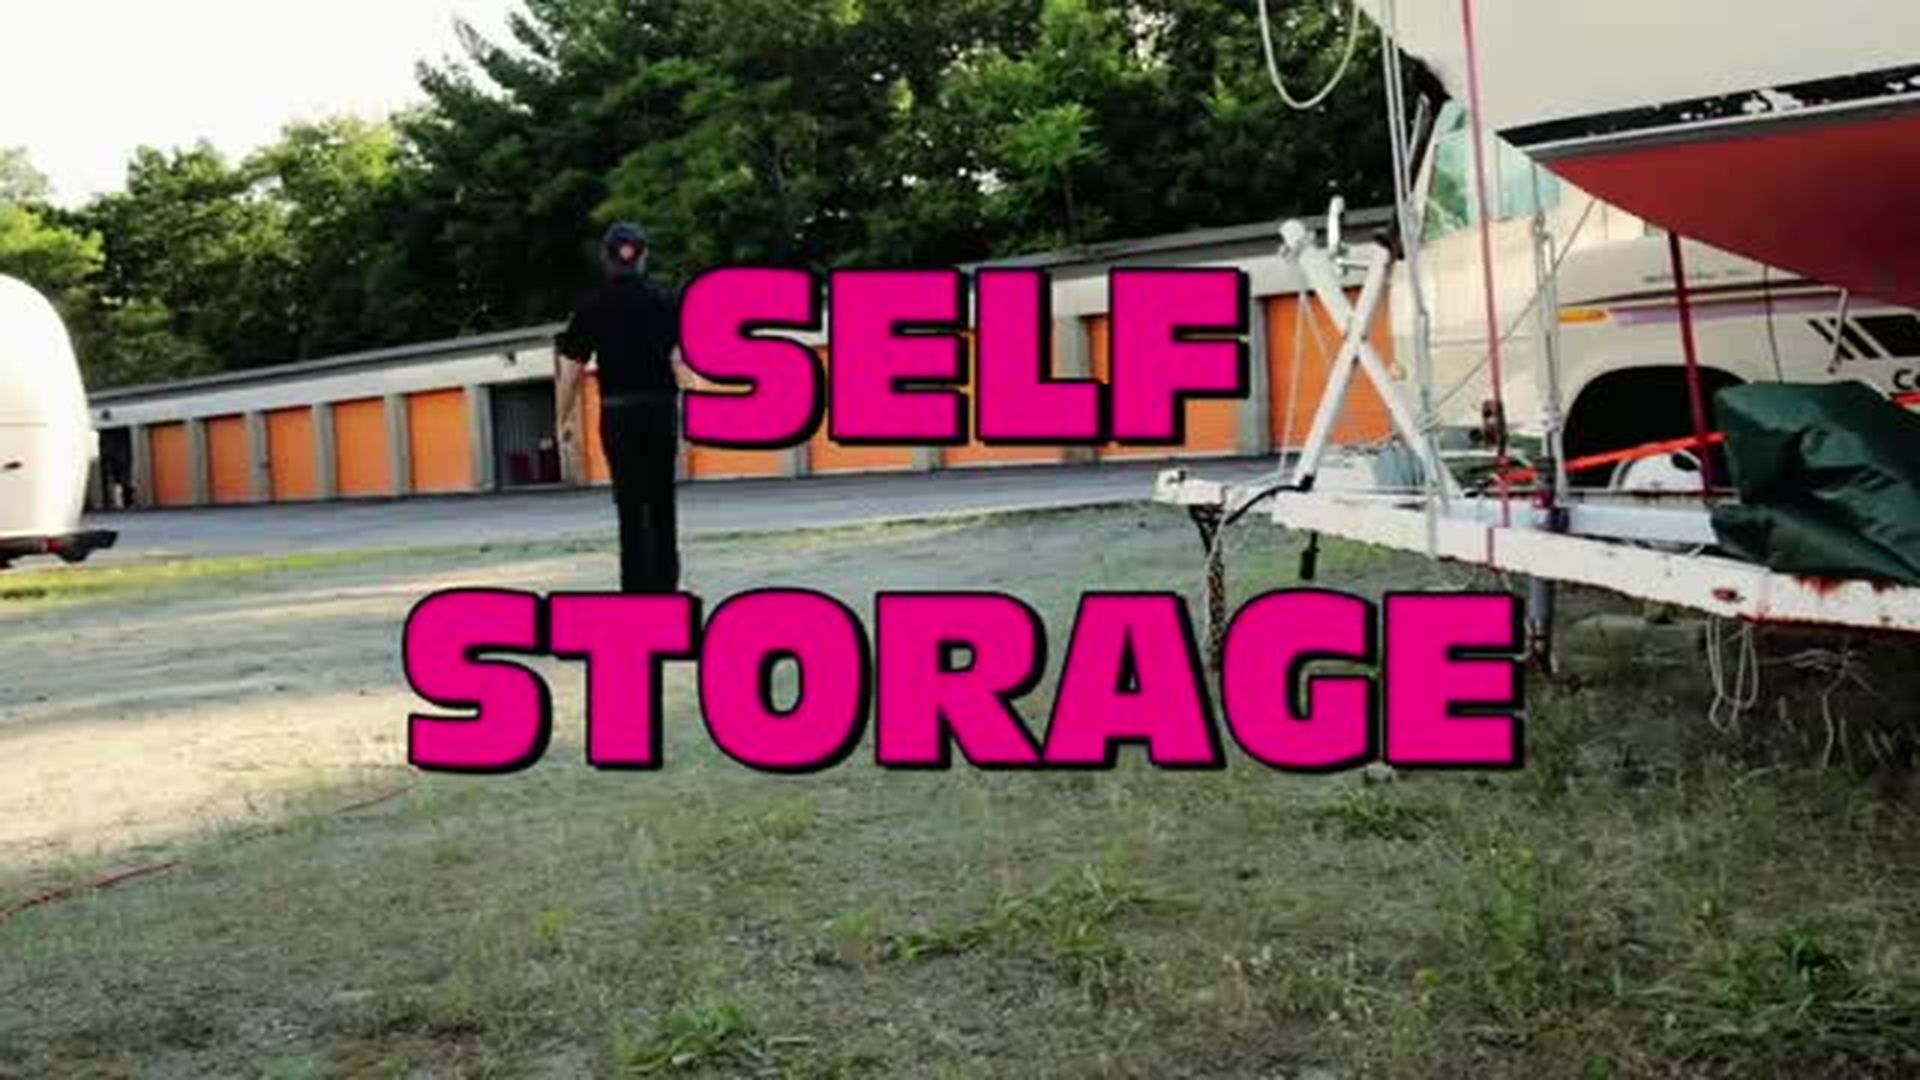 Self Storage 